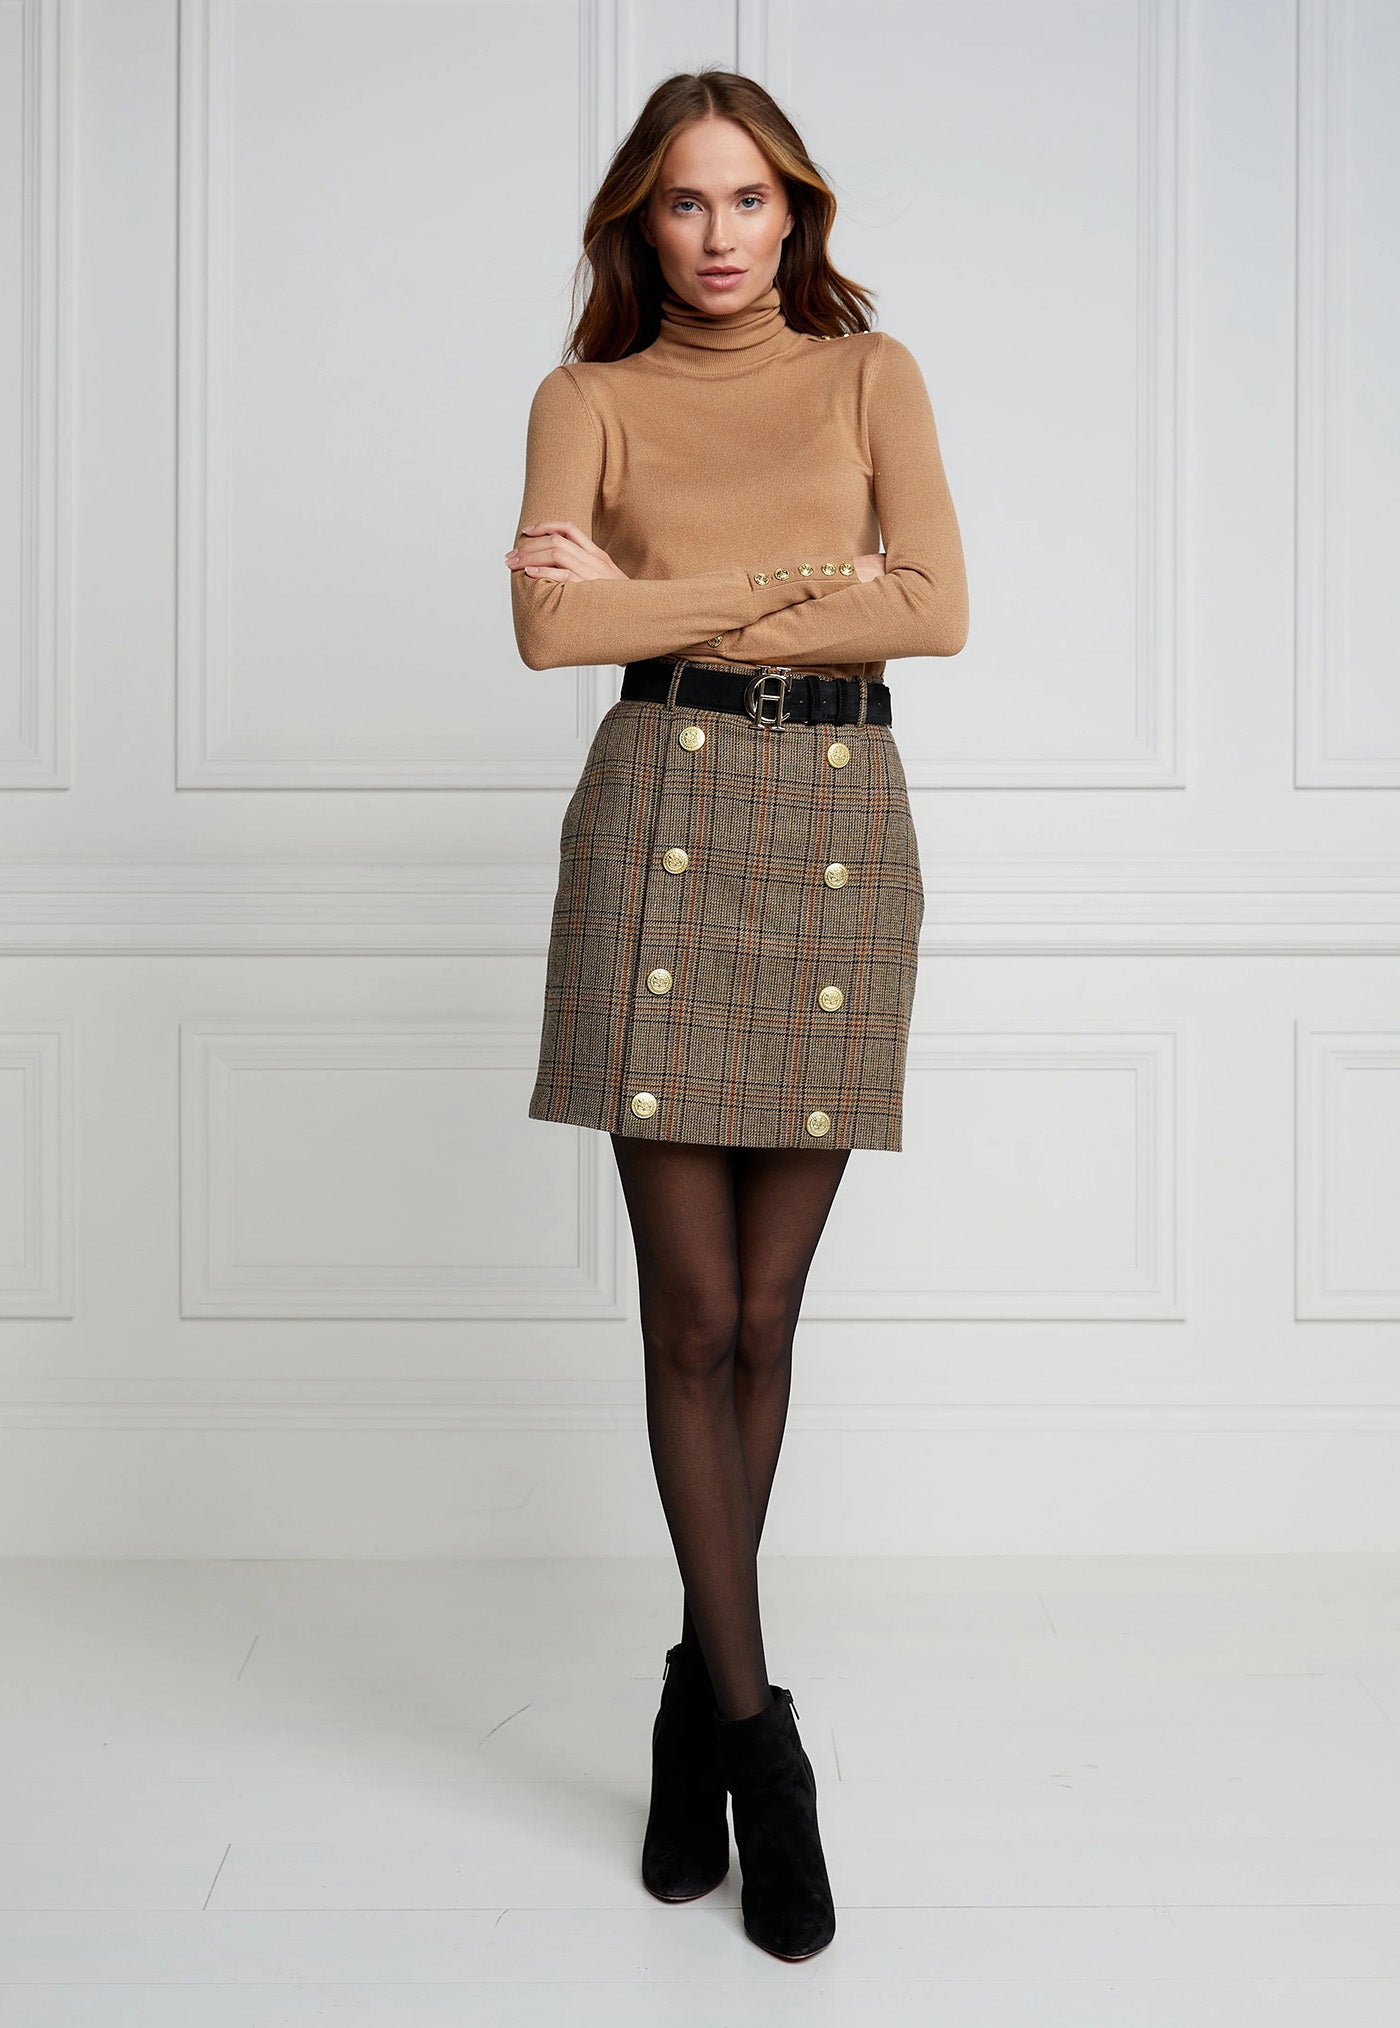 Knightsbridge Skirt - Bourbon Tweed sold by Angel Divine